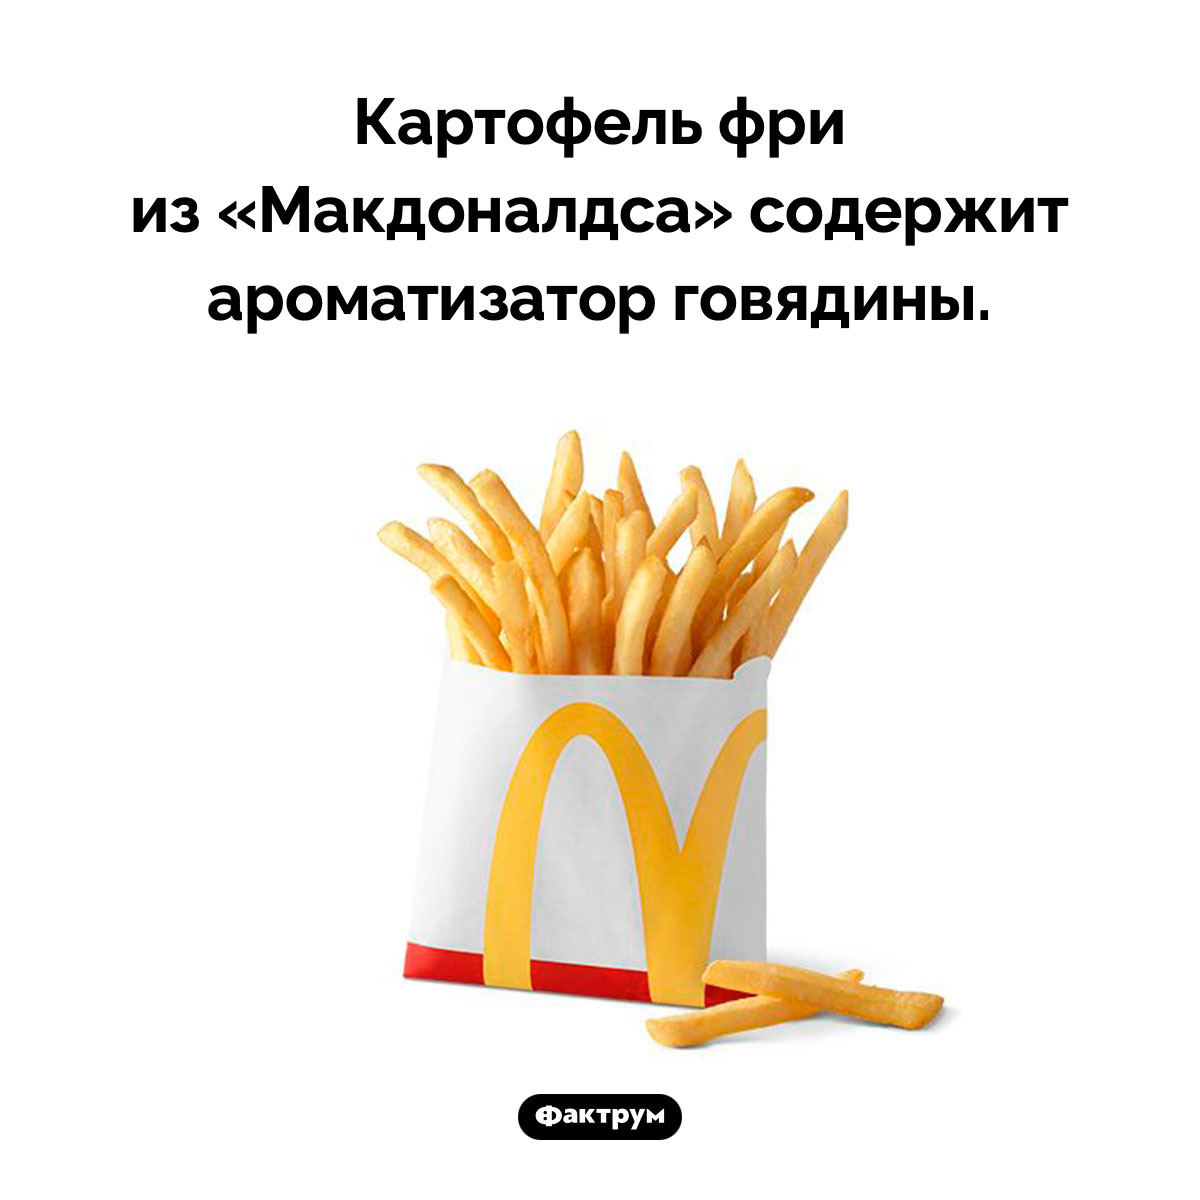 Особый привкус картофеля фри из «Макдоналдса». Картофель фри из «Макдоналдса» содержит ароматизатор говядины.